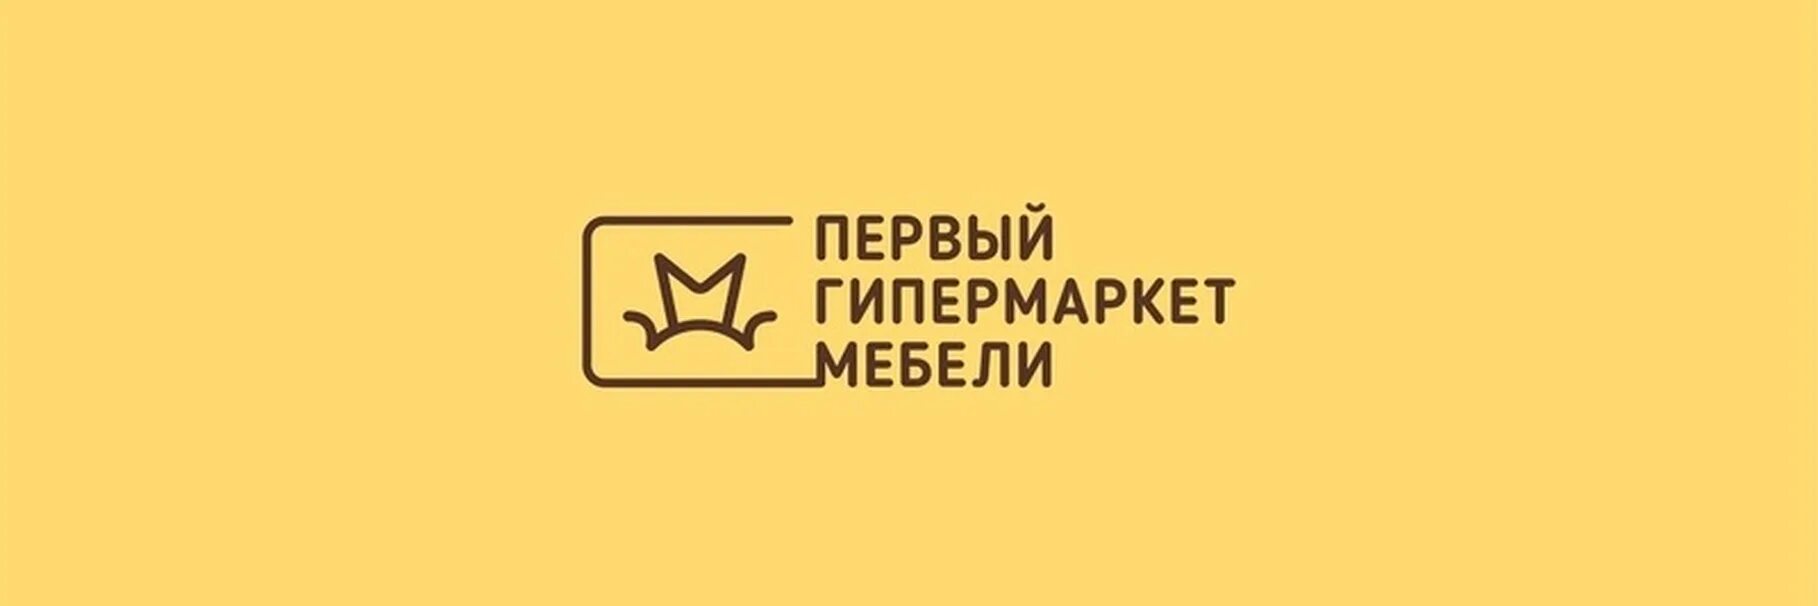 Первый гипермаркет мебели магазины. Первый гипермаркет мебели. Первый гипермаркет мебели лого. Первый гипермаркет мебели Челябинск. Первый гипермаркет мебельный логотип.